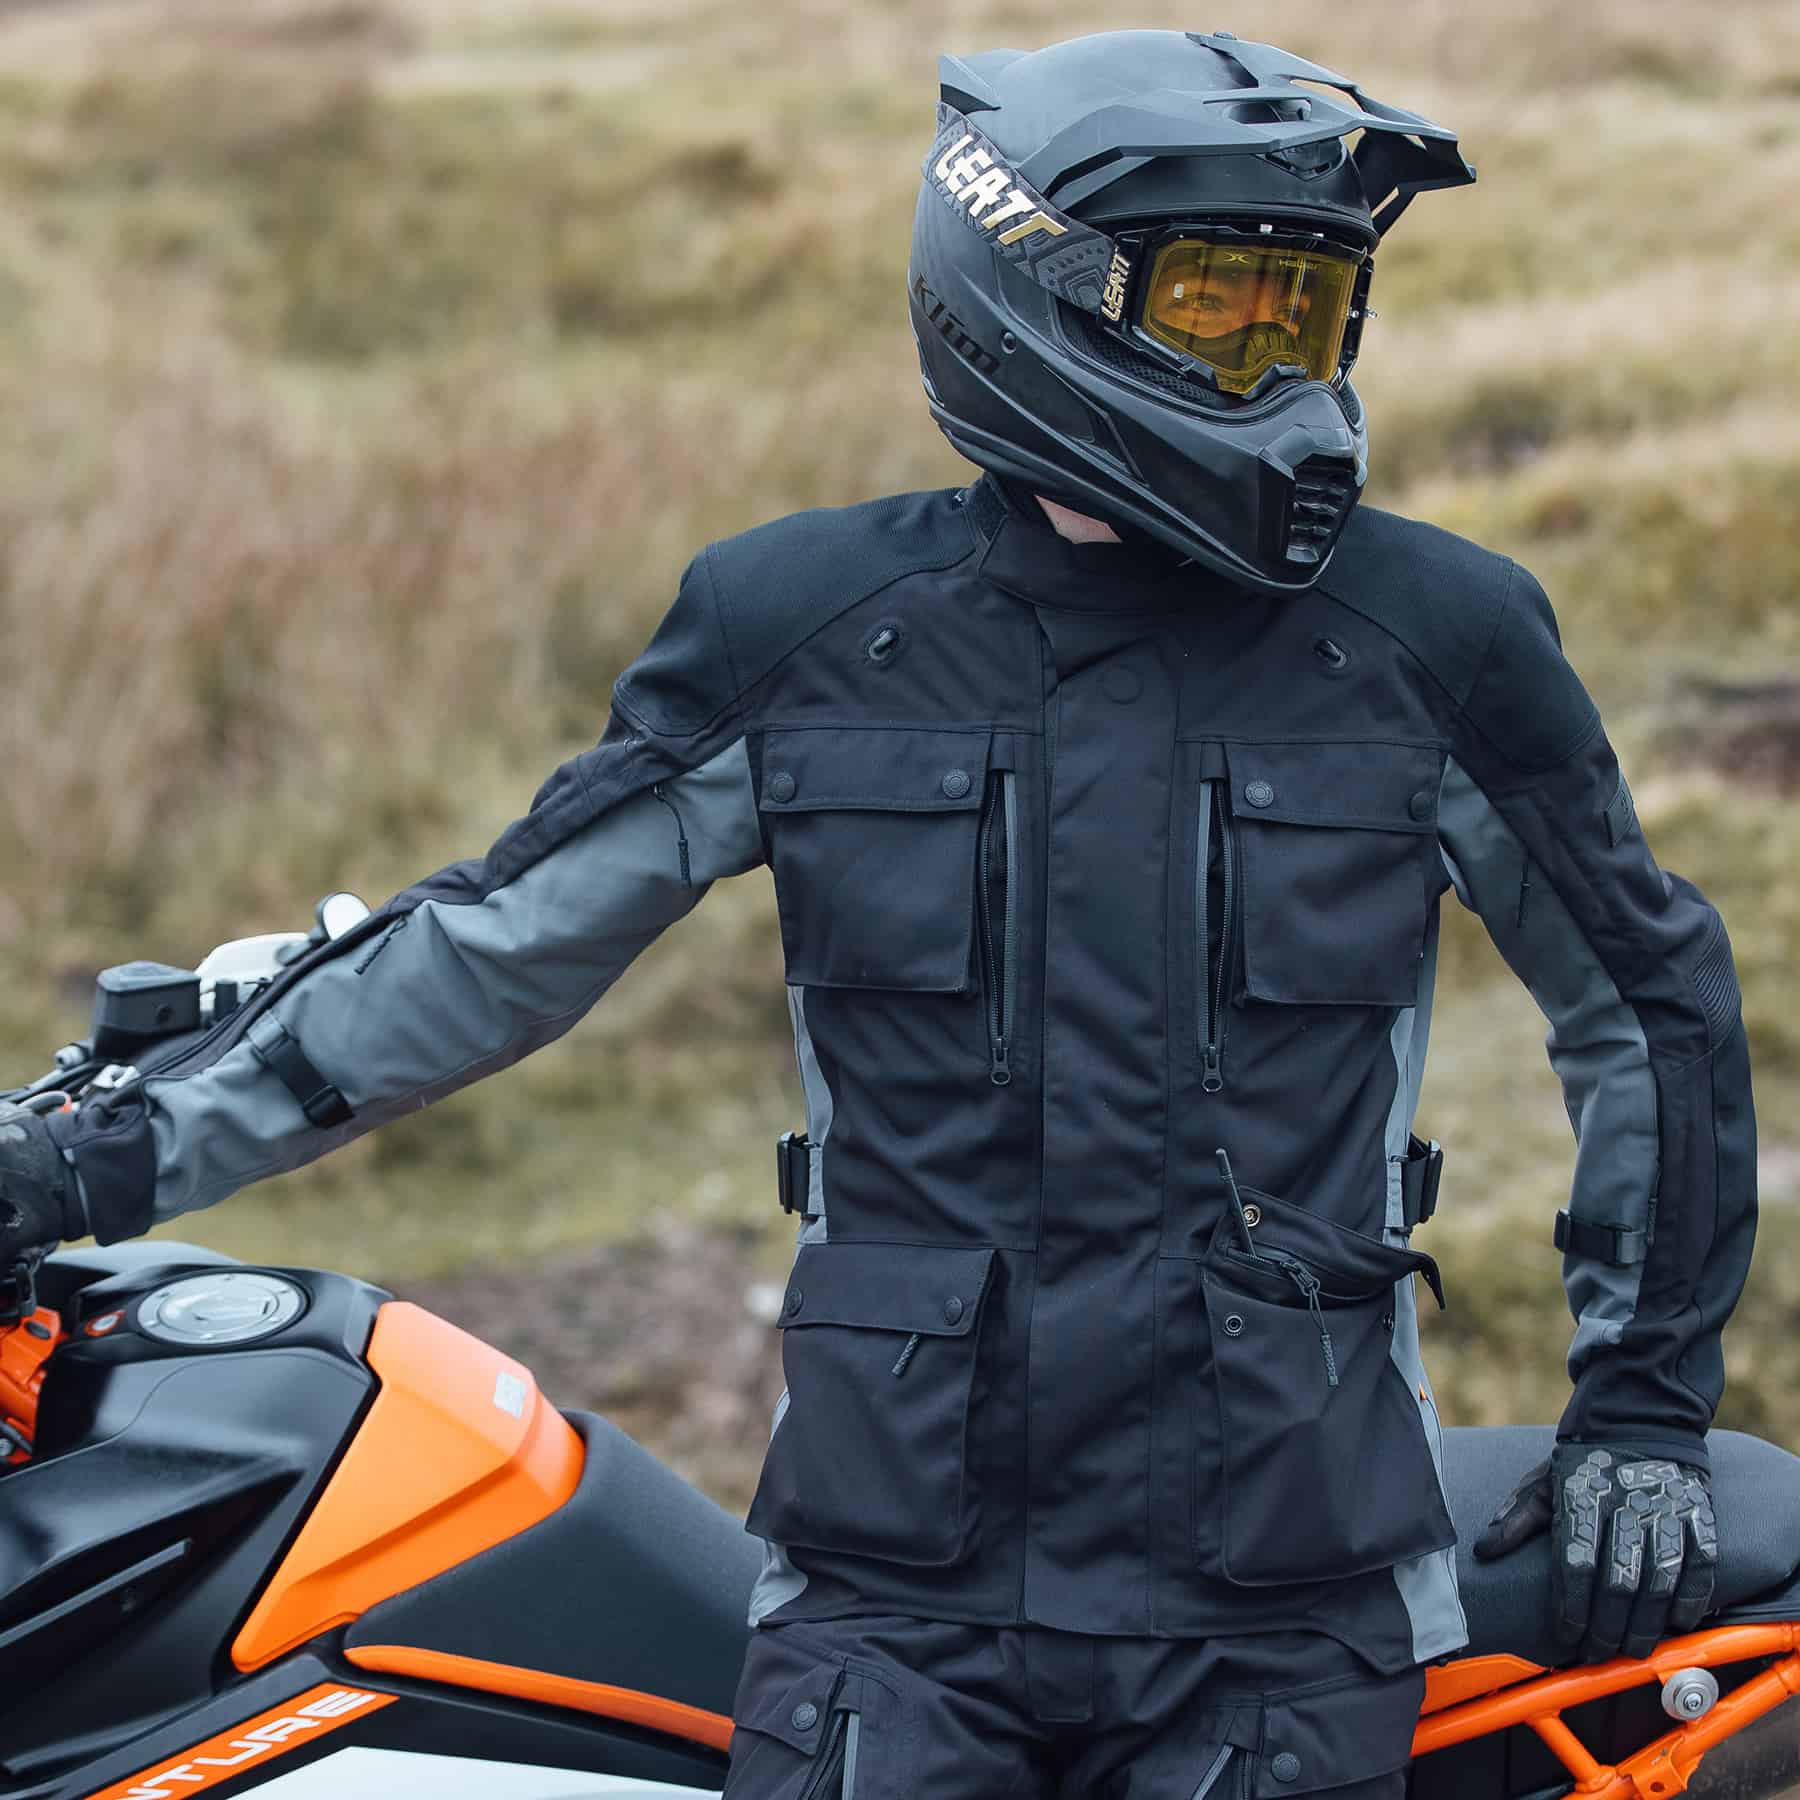 Merlin Solitude Motorcycle Jacket in Black/Grey